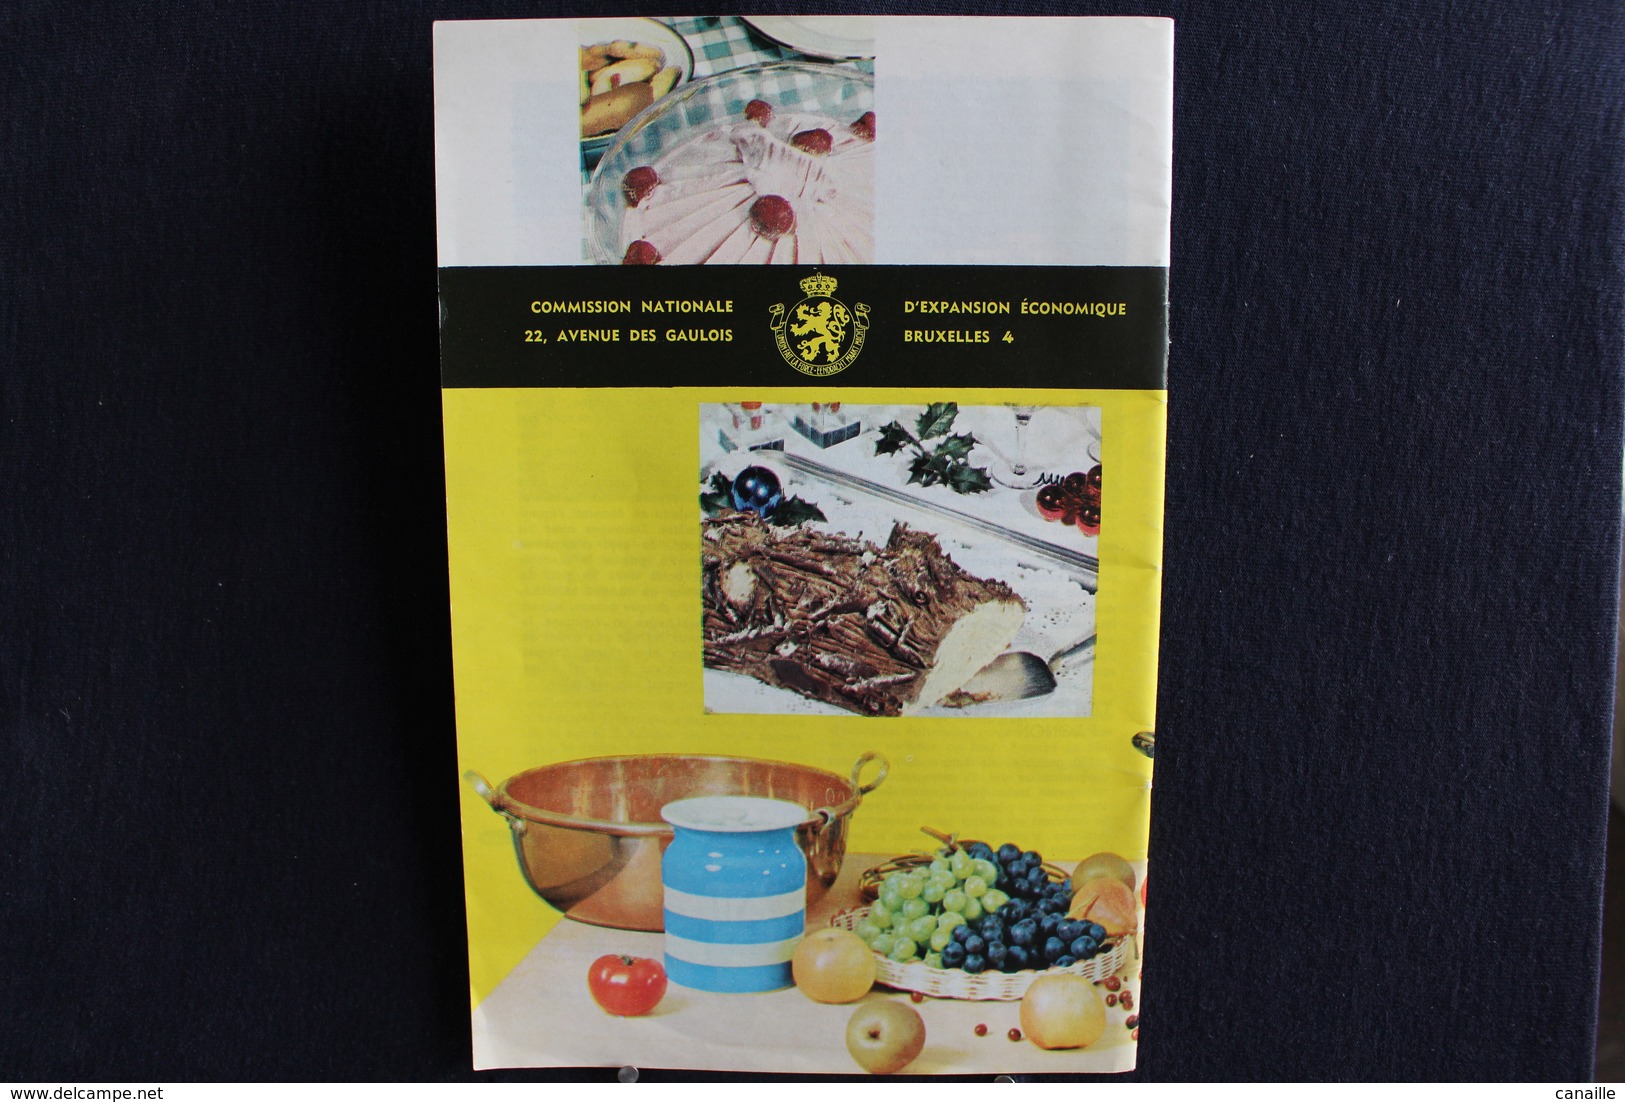 Publicités ( 5 )  - Livret De Cuisine - Par Gaston Clément - Fruits Et Gourmandises  -  Forma 13x20 Cm 15 Page - Cuisine & Vins